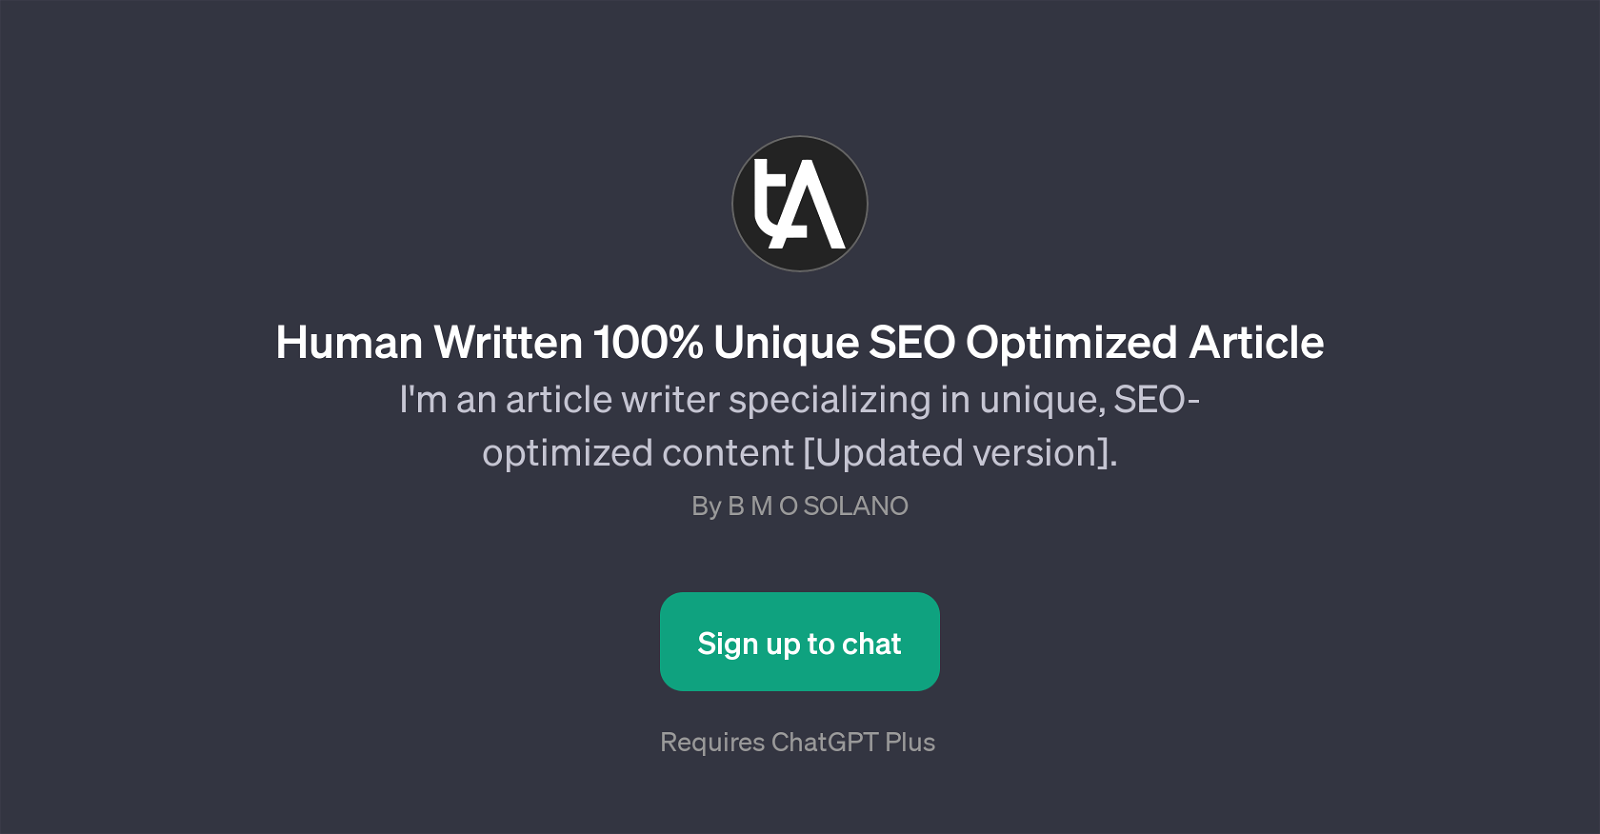 Human Written 100% Unique SEO Optimized Article website